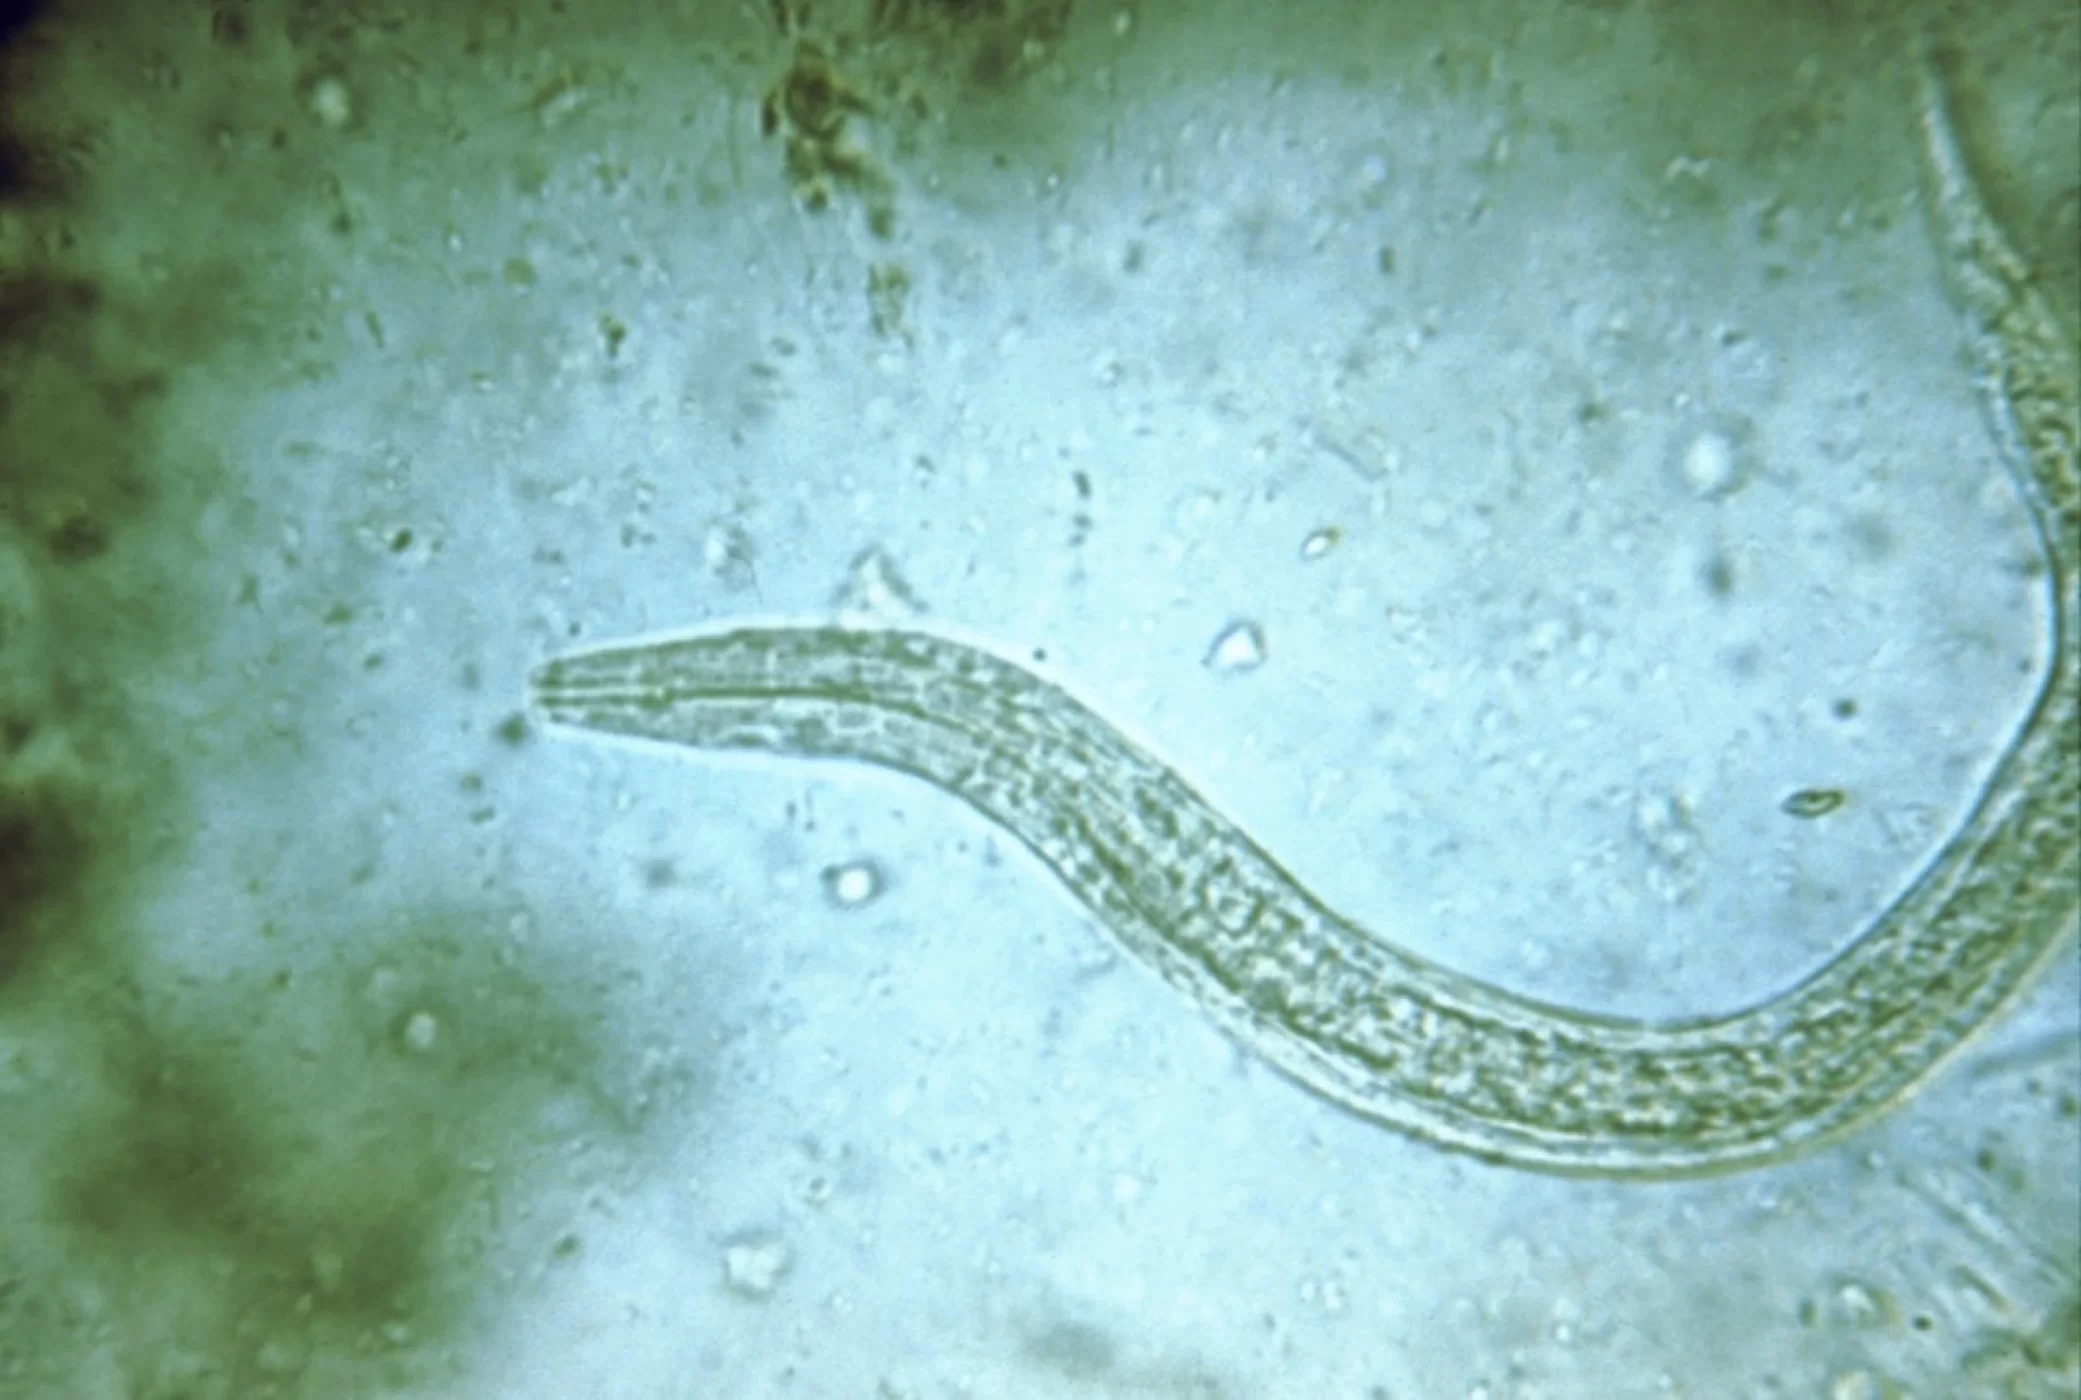 Ngeri, begini bentuk Parasit jika dilihat di bawah mikroskop